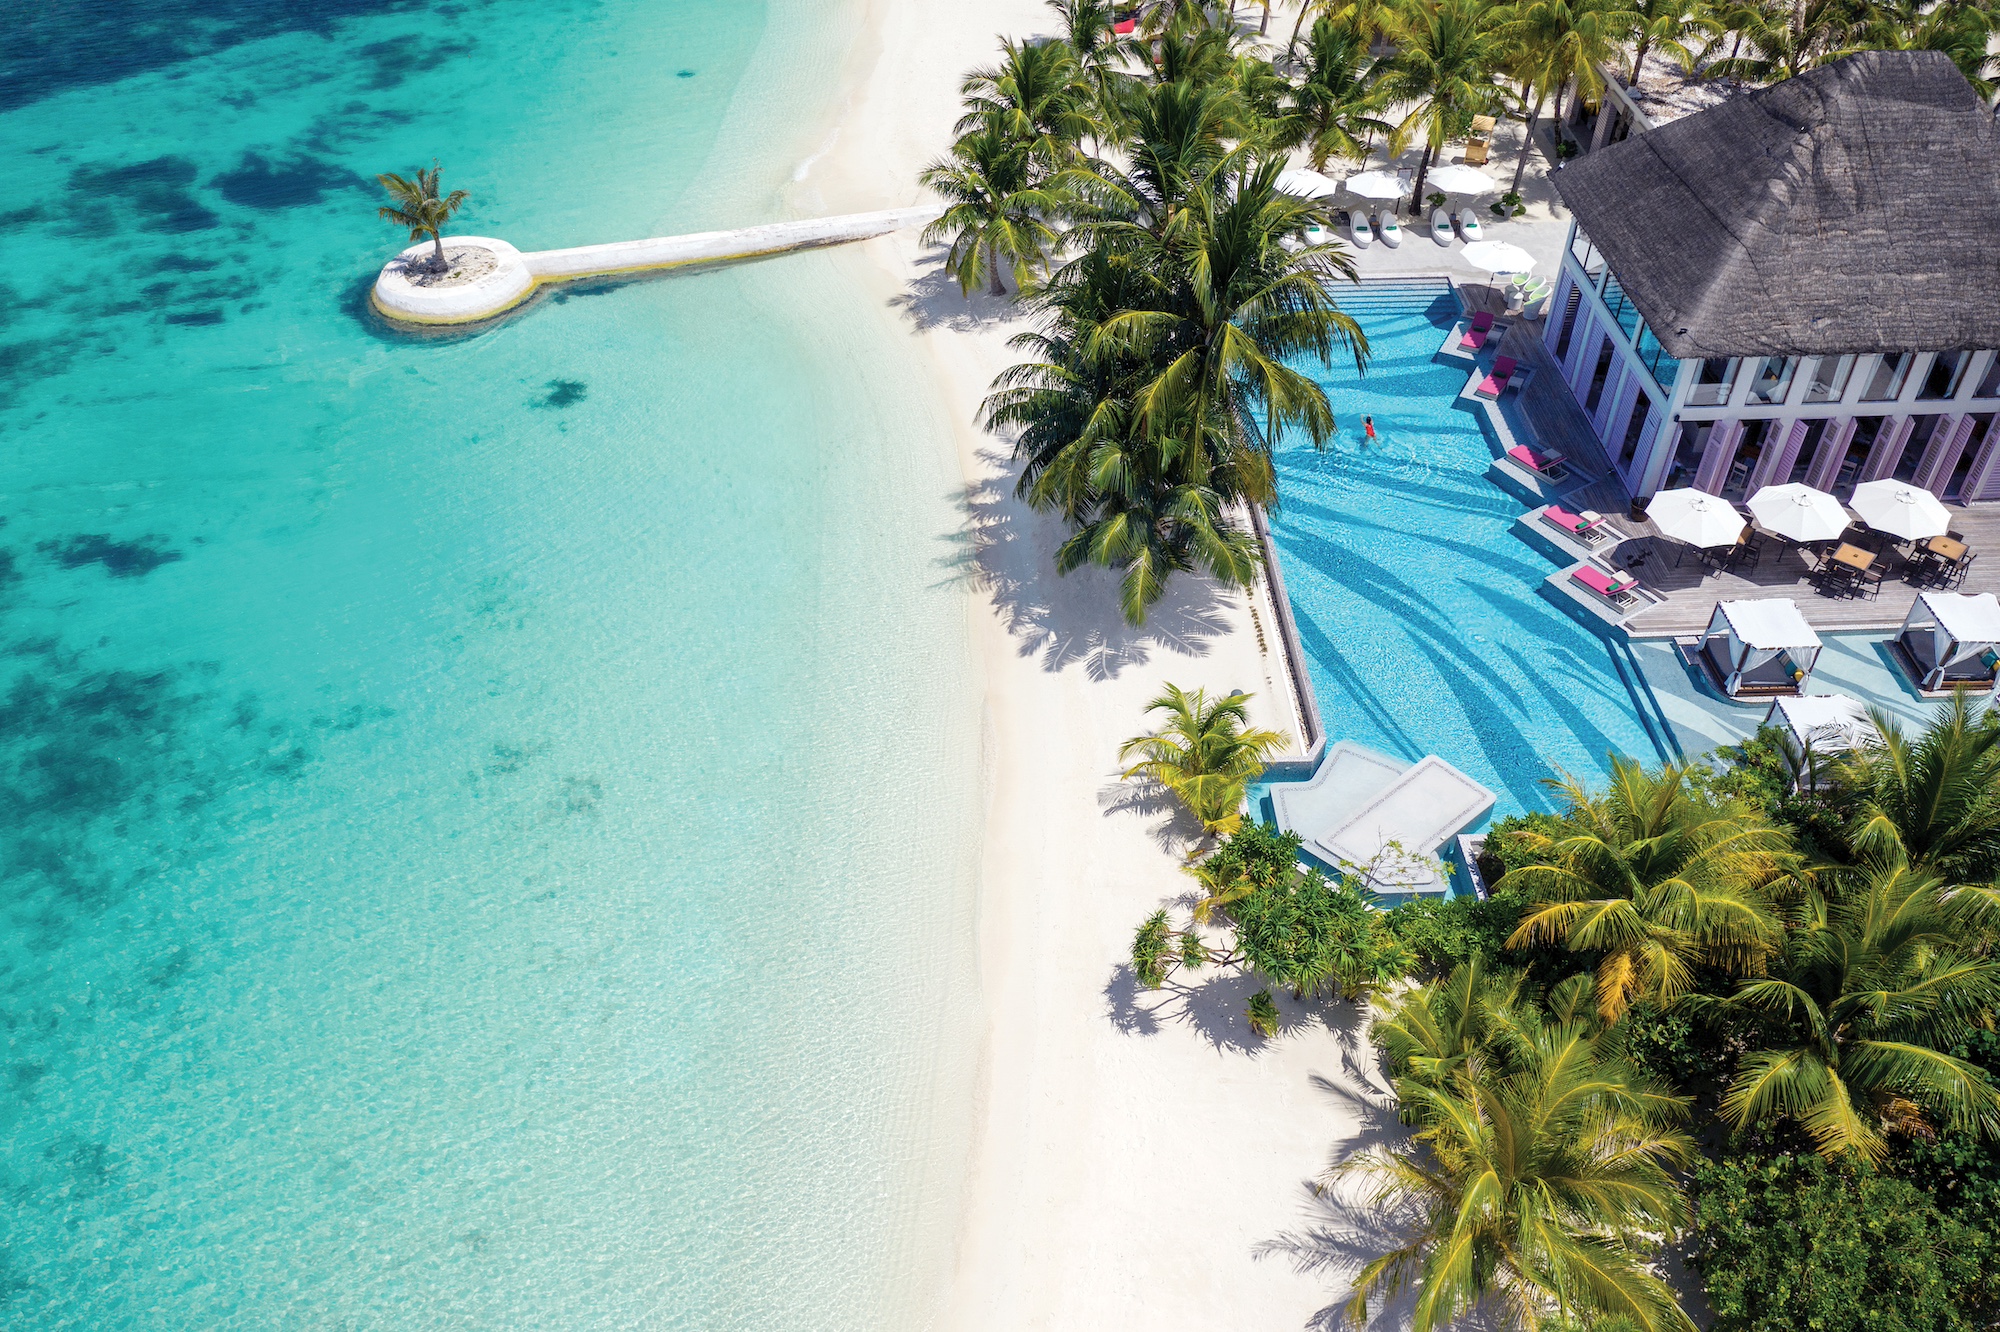 Win a trip to the Maldives